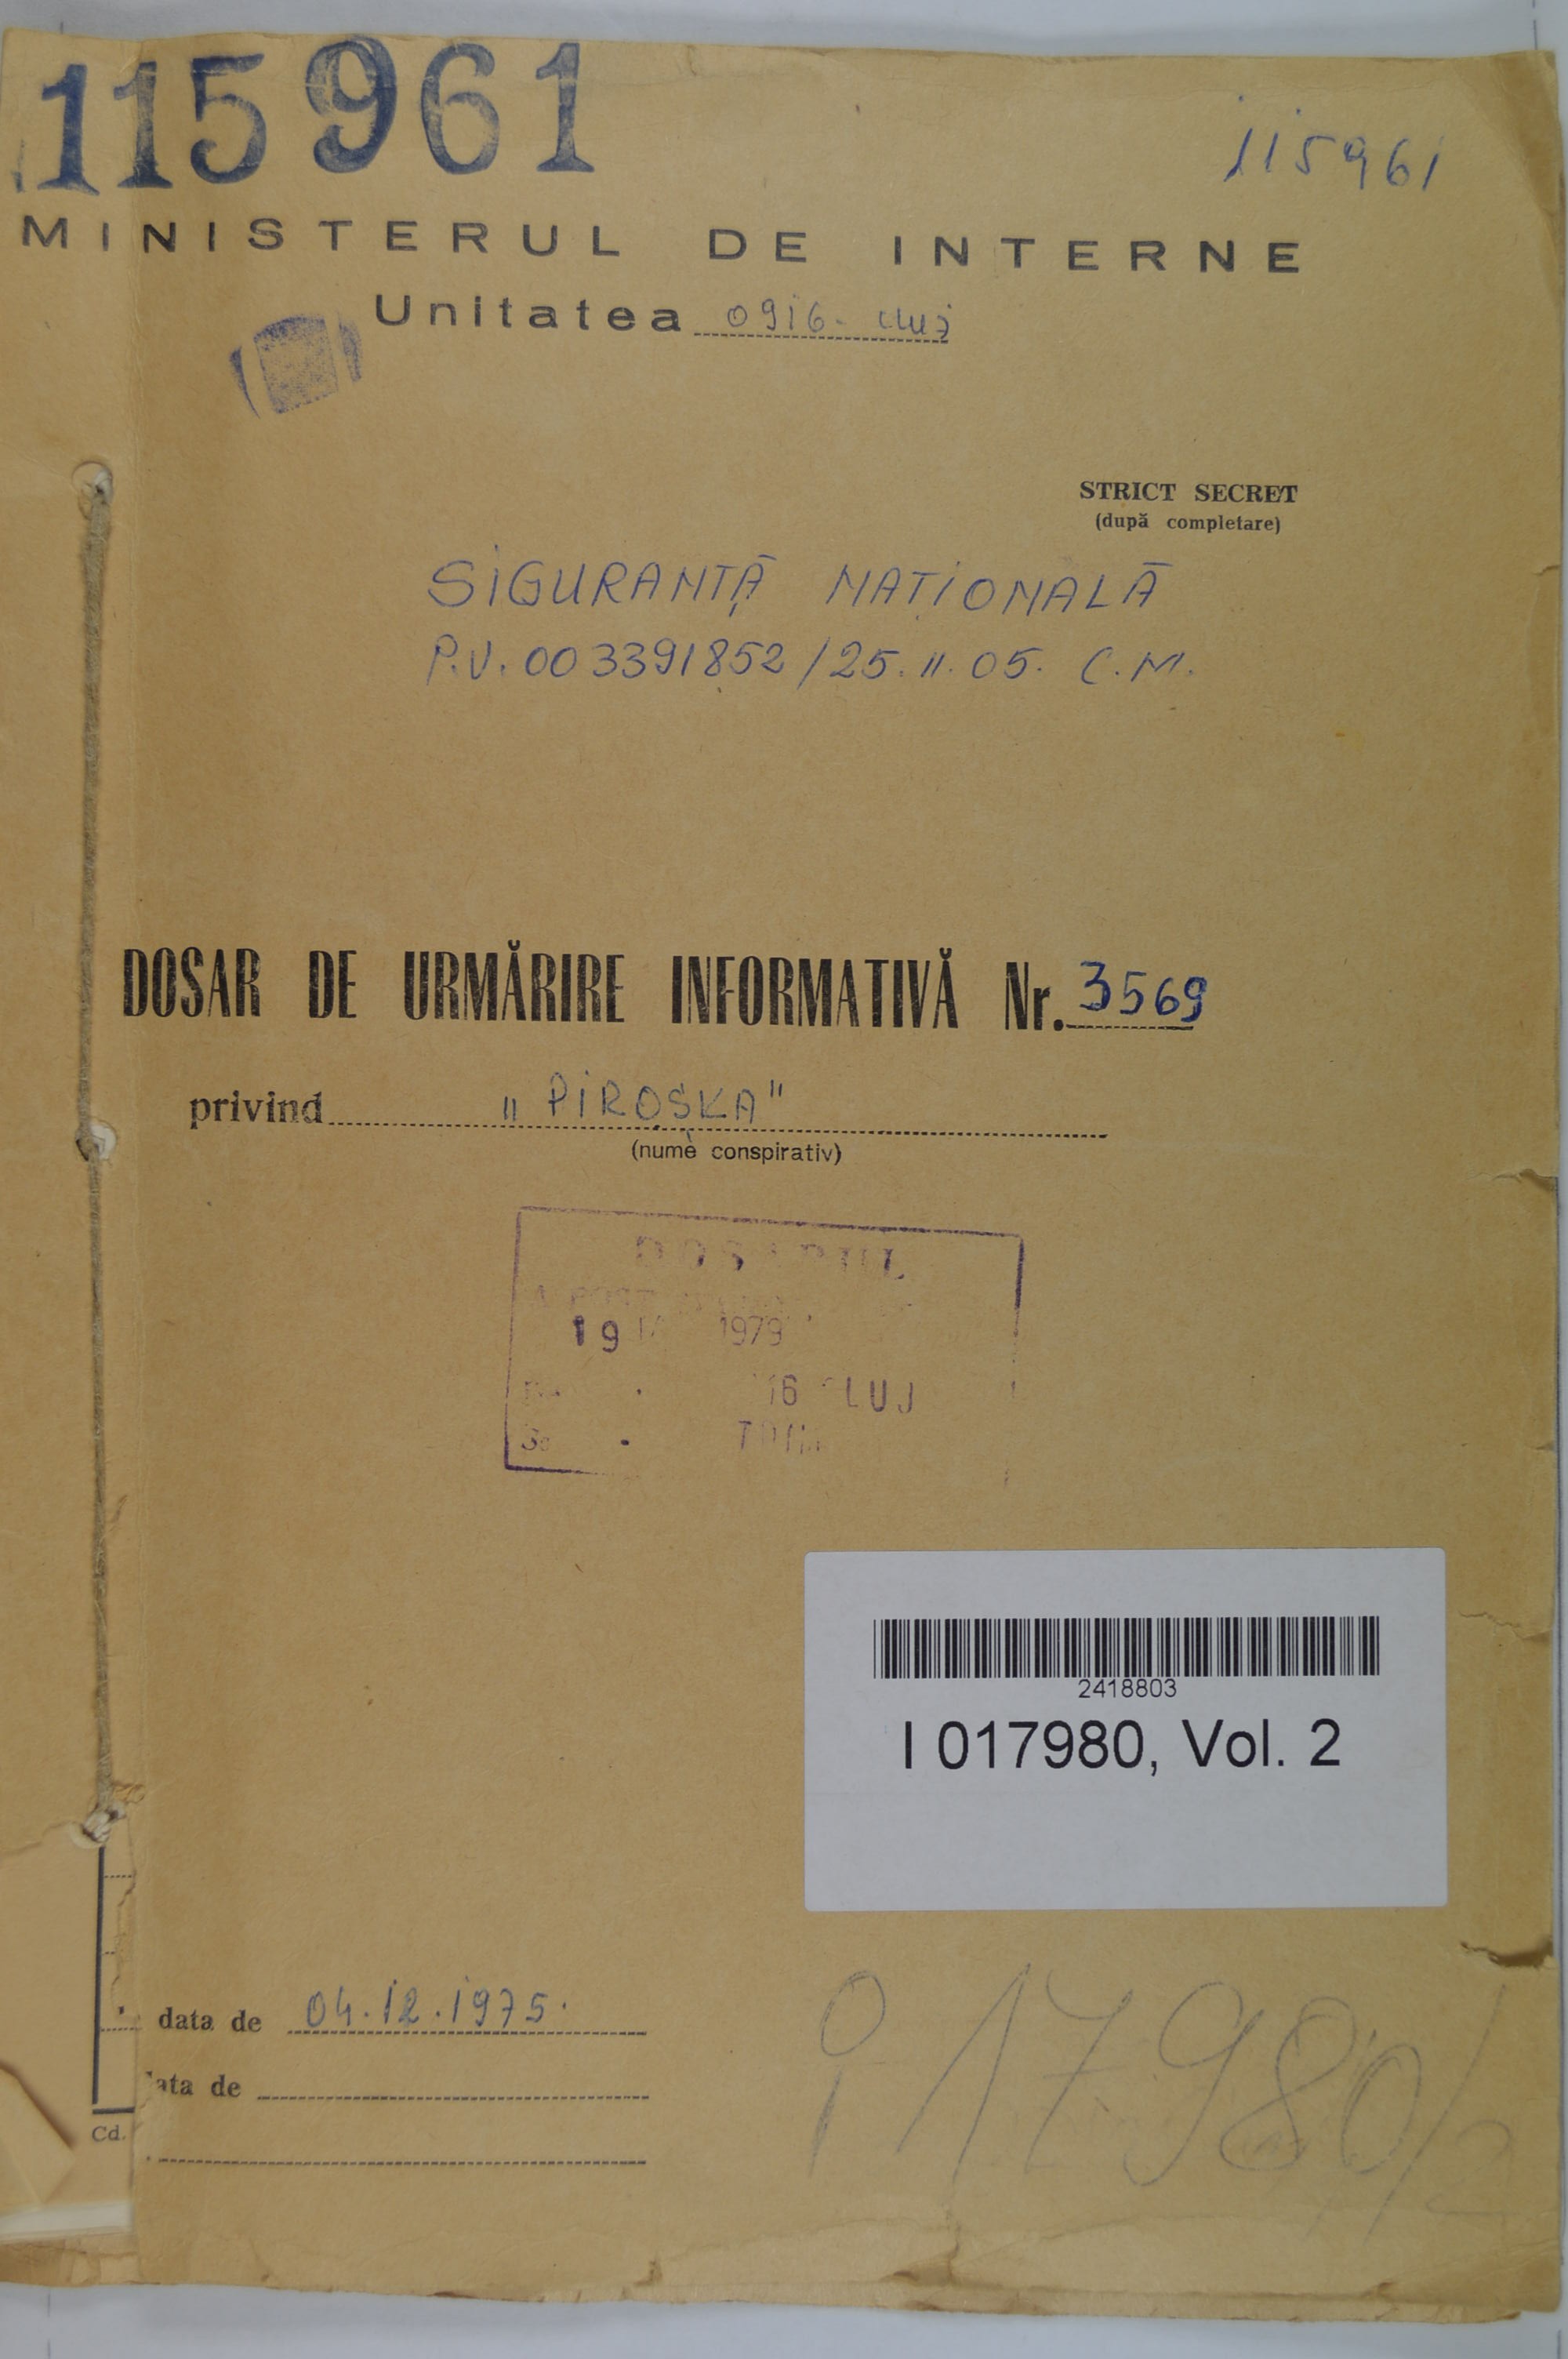  Az 1975-ben Gyimesire felfektetett titkosszolgálati megfigyelési-adatgyűjtő dosszié fedőborítója